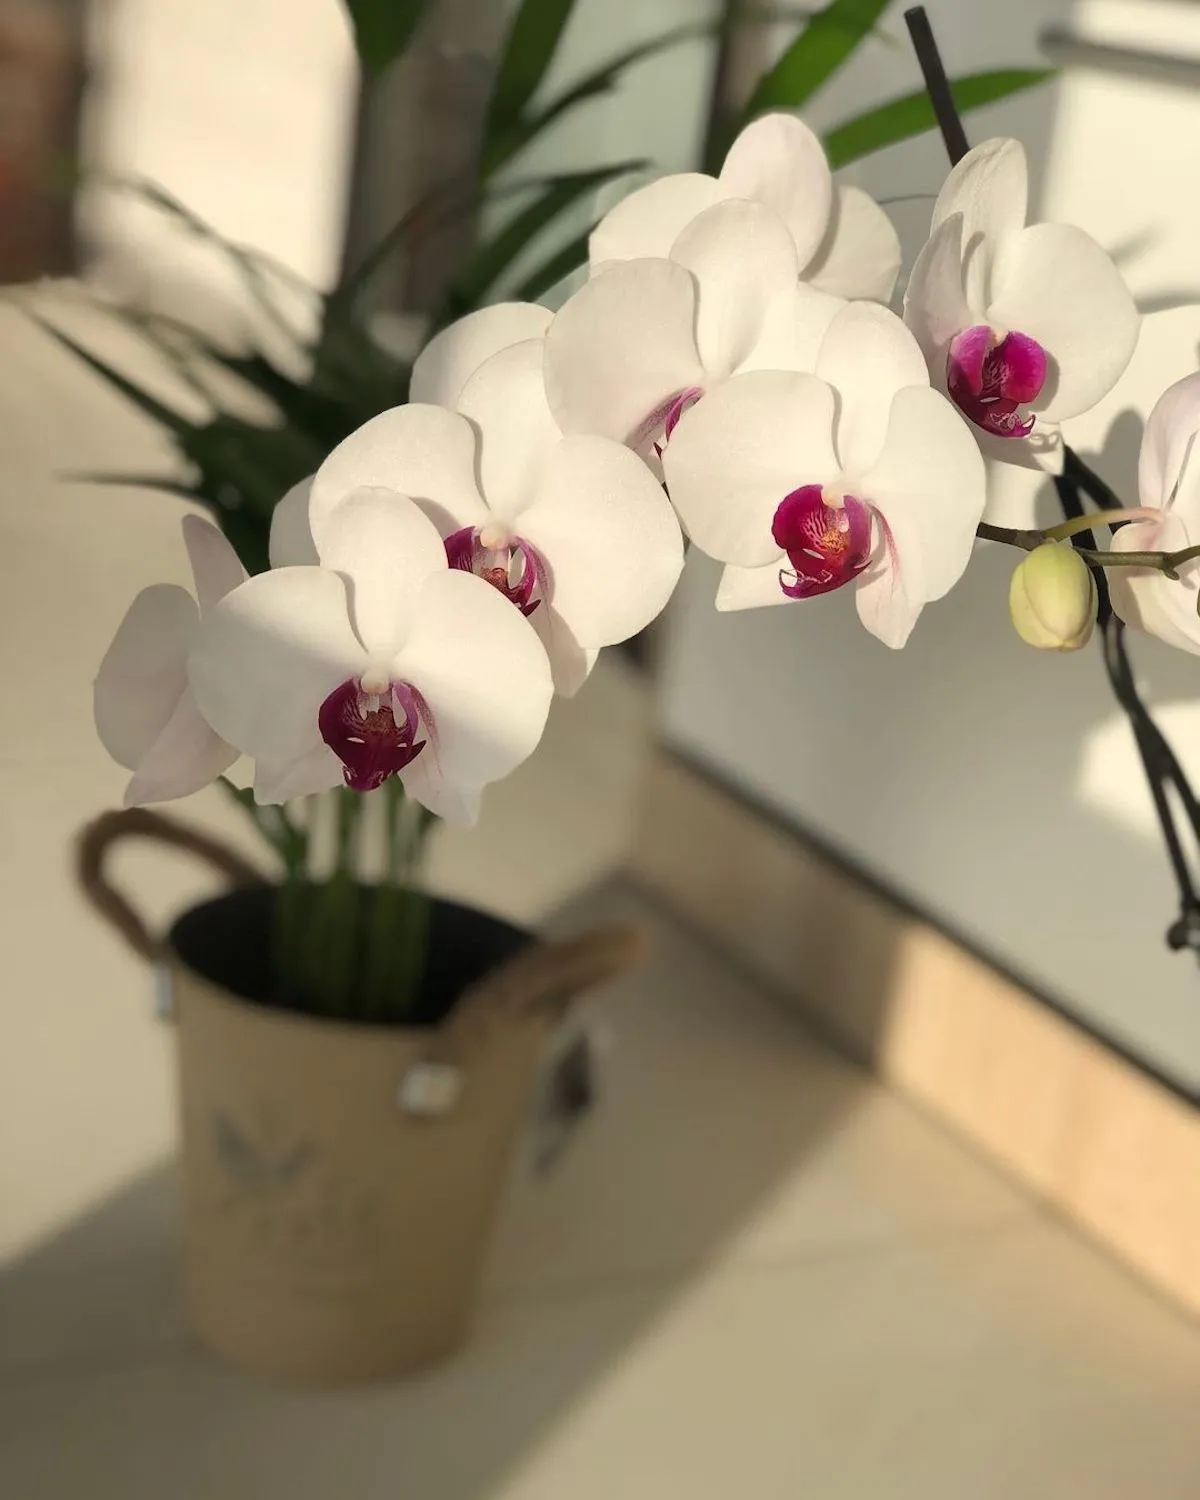 wie verwende ich karoffelwasser fuer orchideen